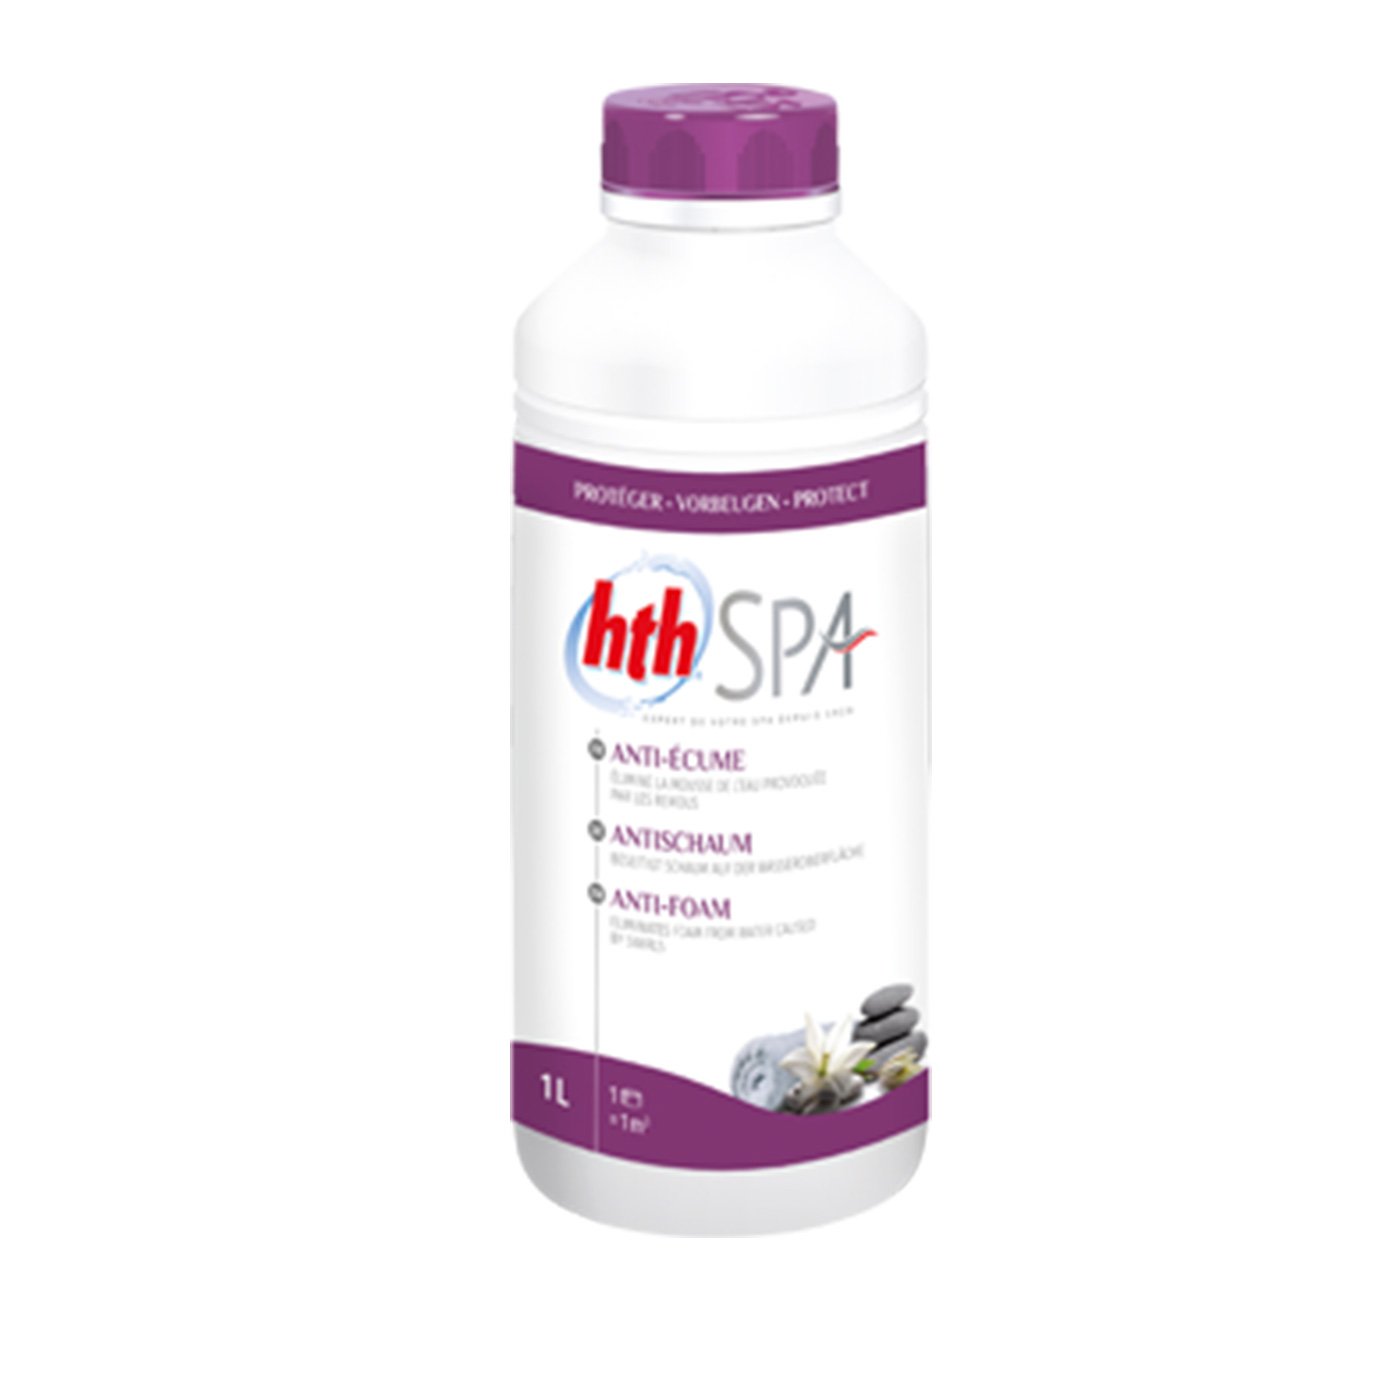 HTH Spa Anti-Foam